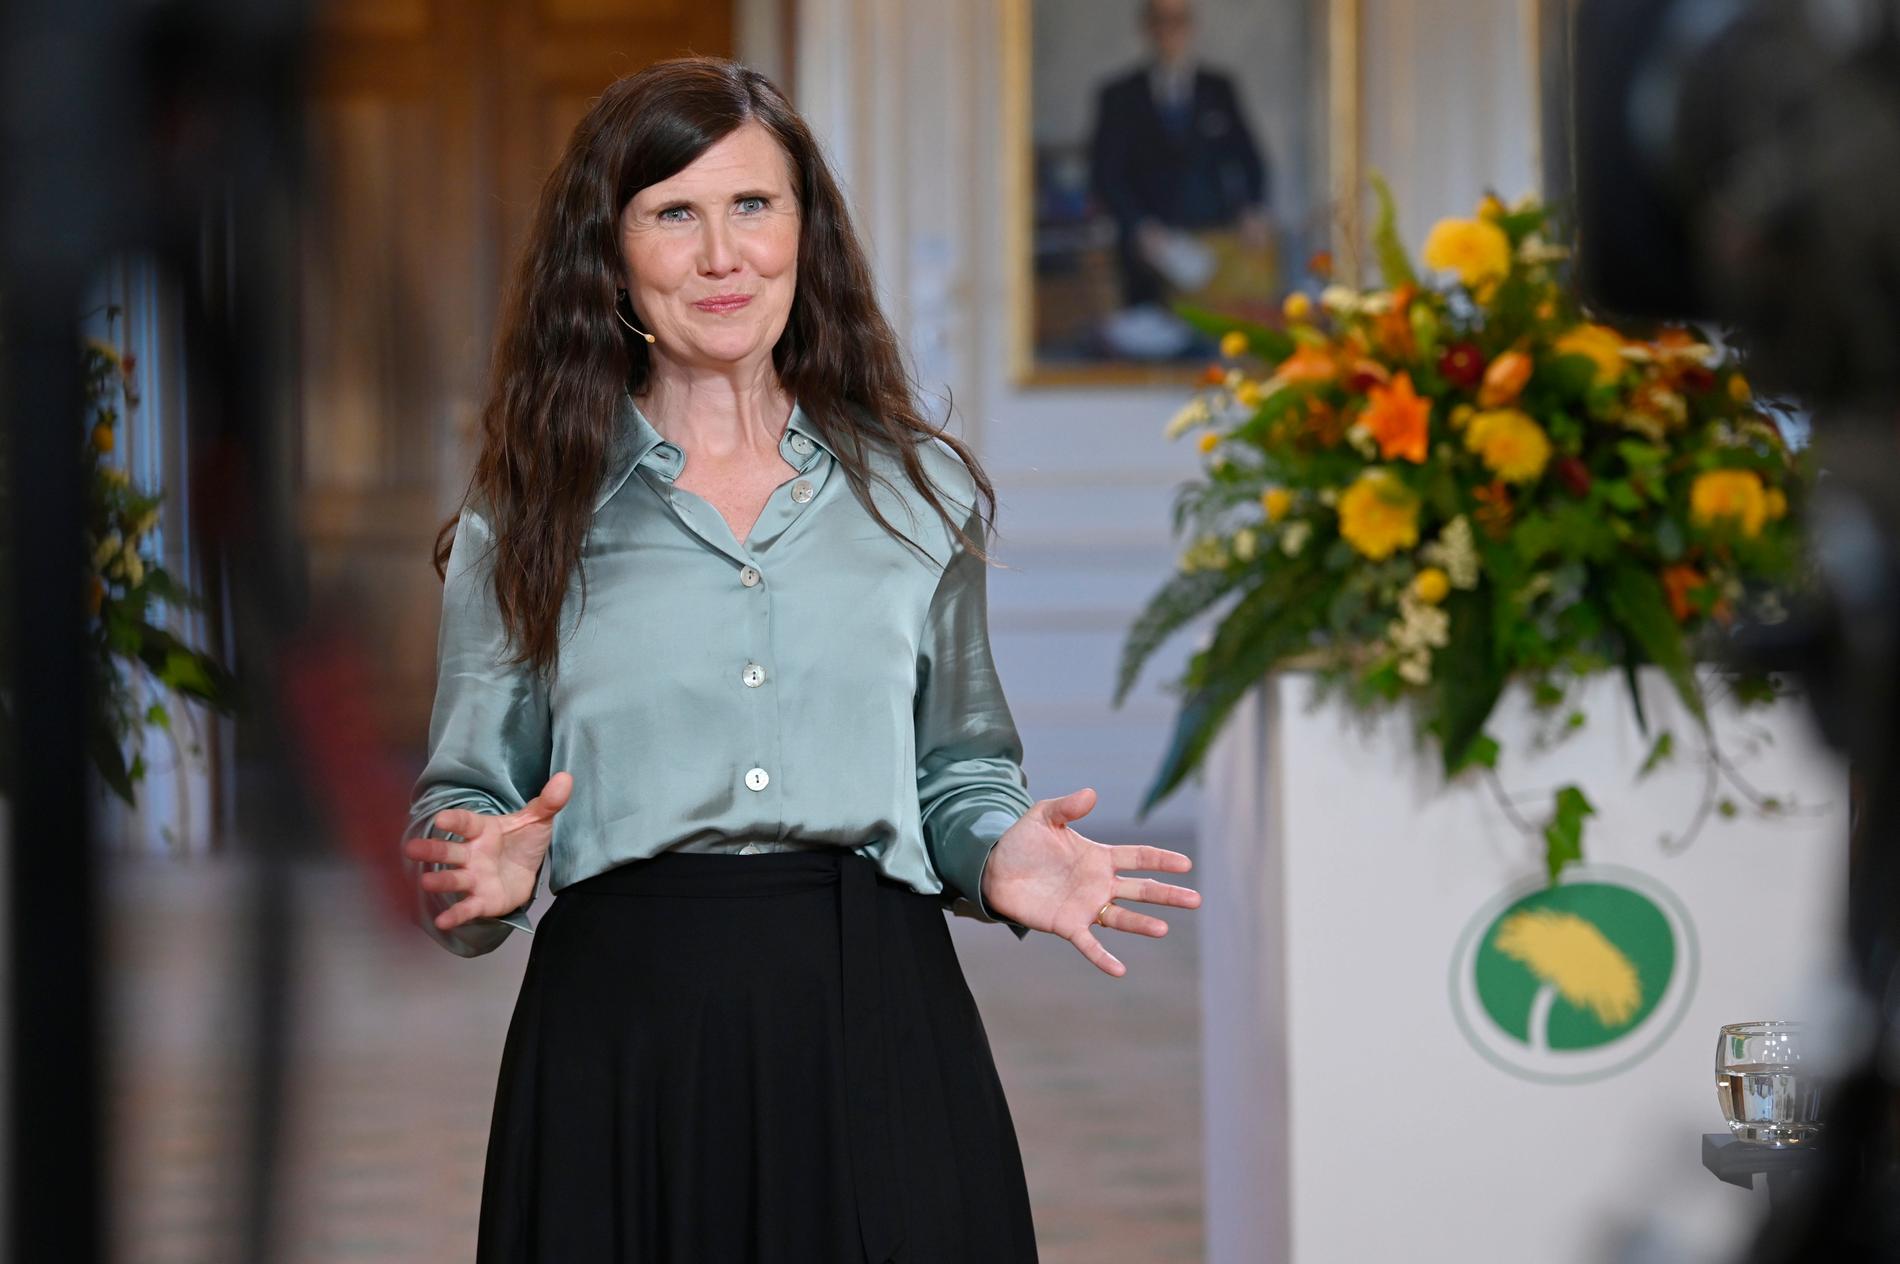 Miljöpartiets språkrör Märta Stenevi under sitt tal på Almedalsveckan.